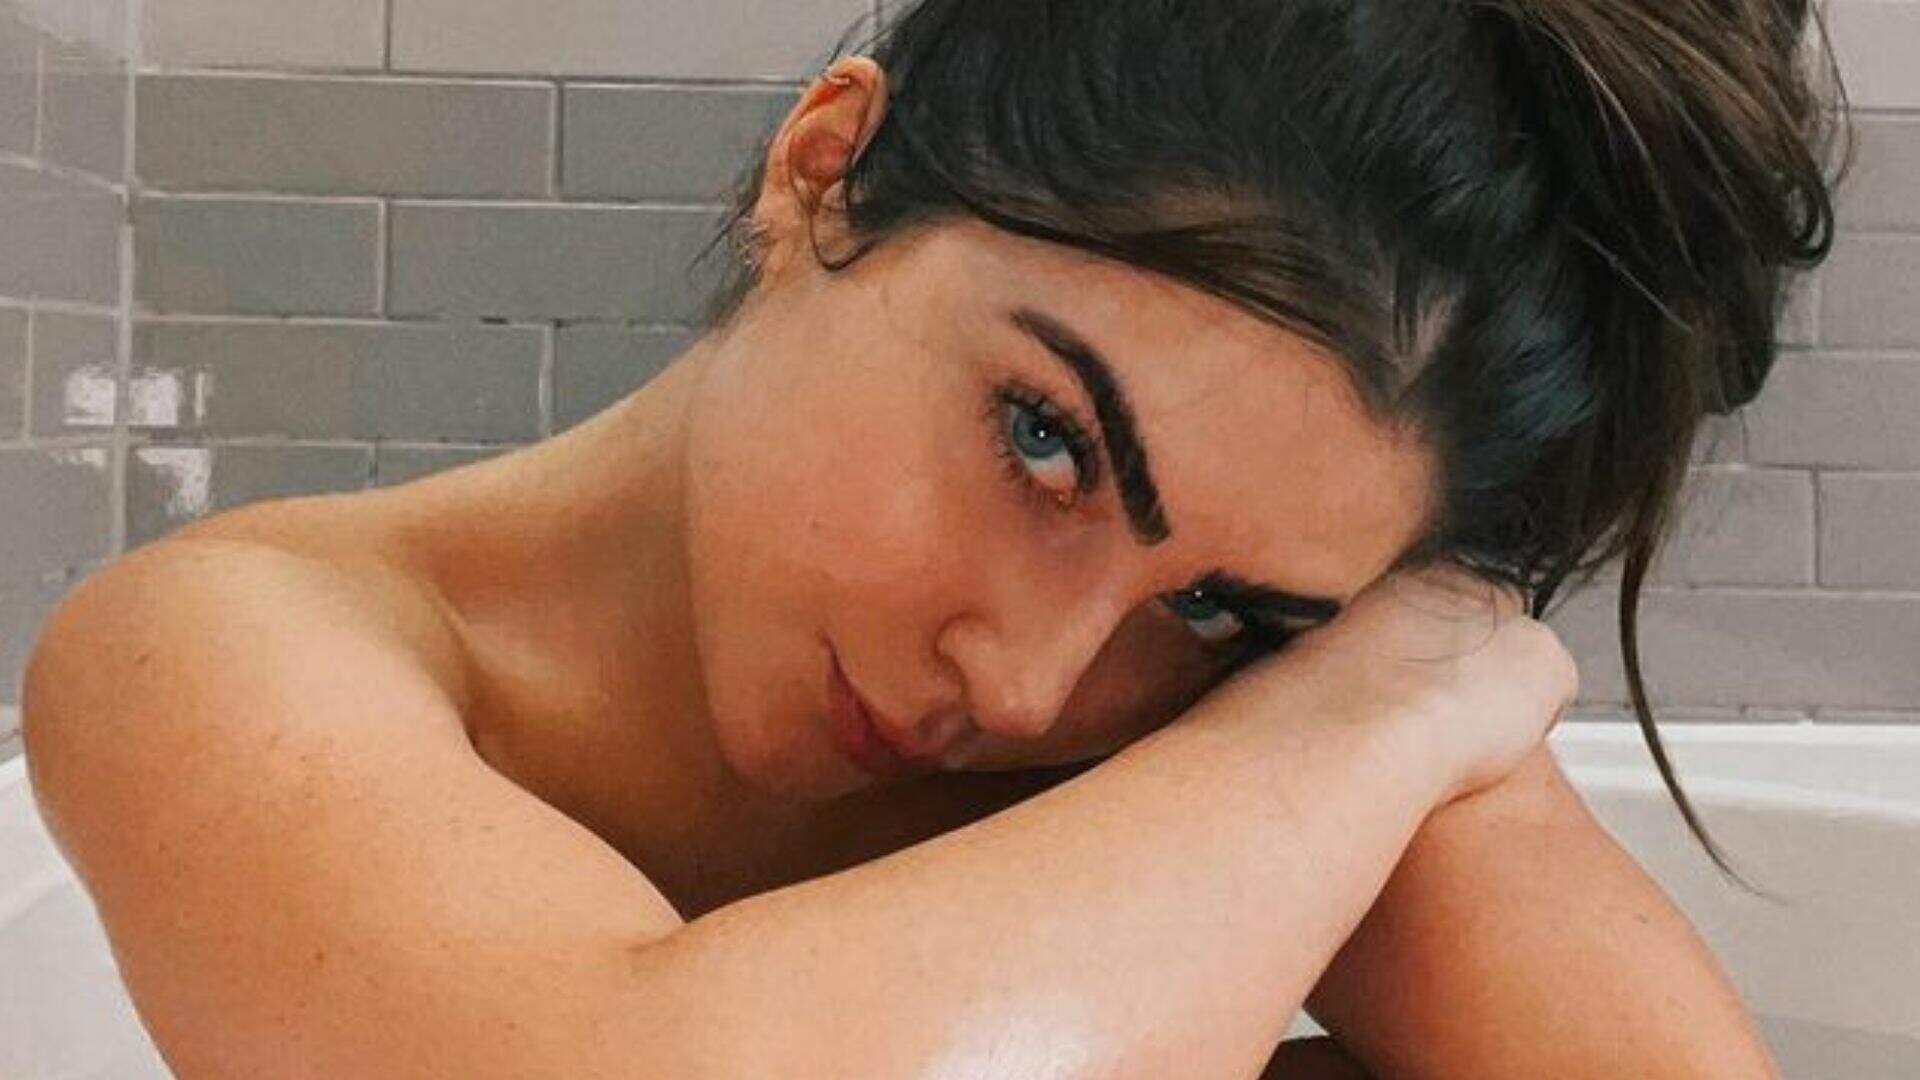 Jade Picon resolve gravar vídeo para o Instagram tomando banho: “BBB não mostrou isso” - Metropolitana FM